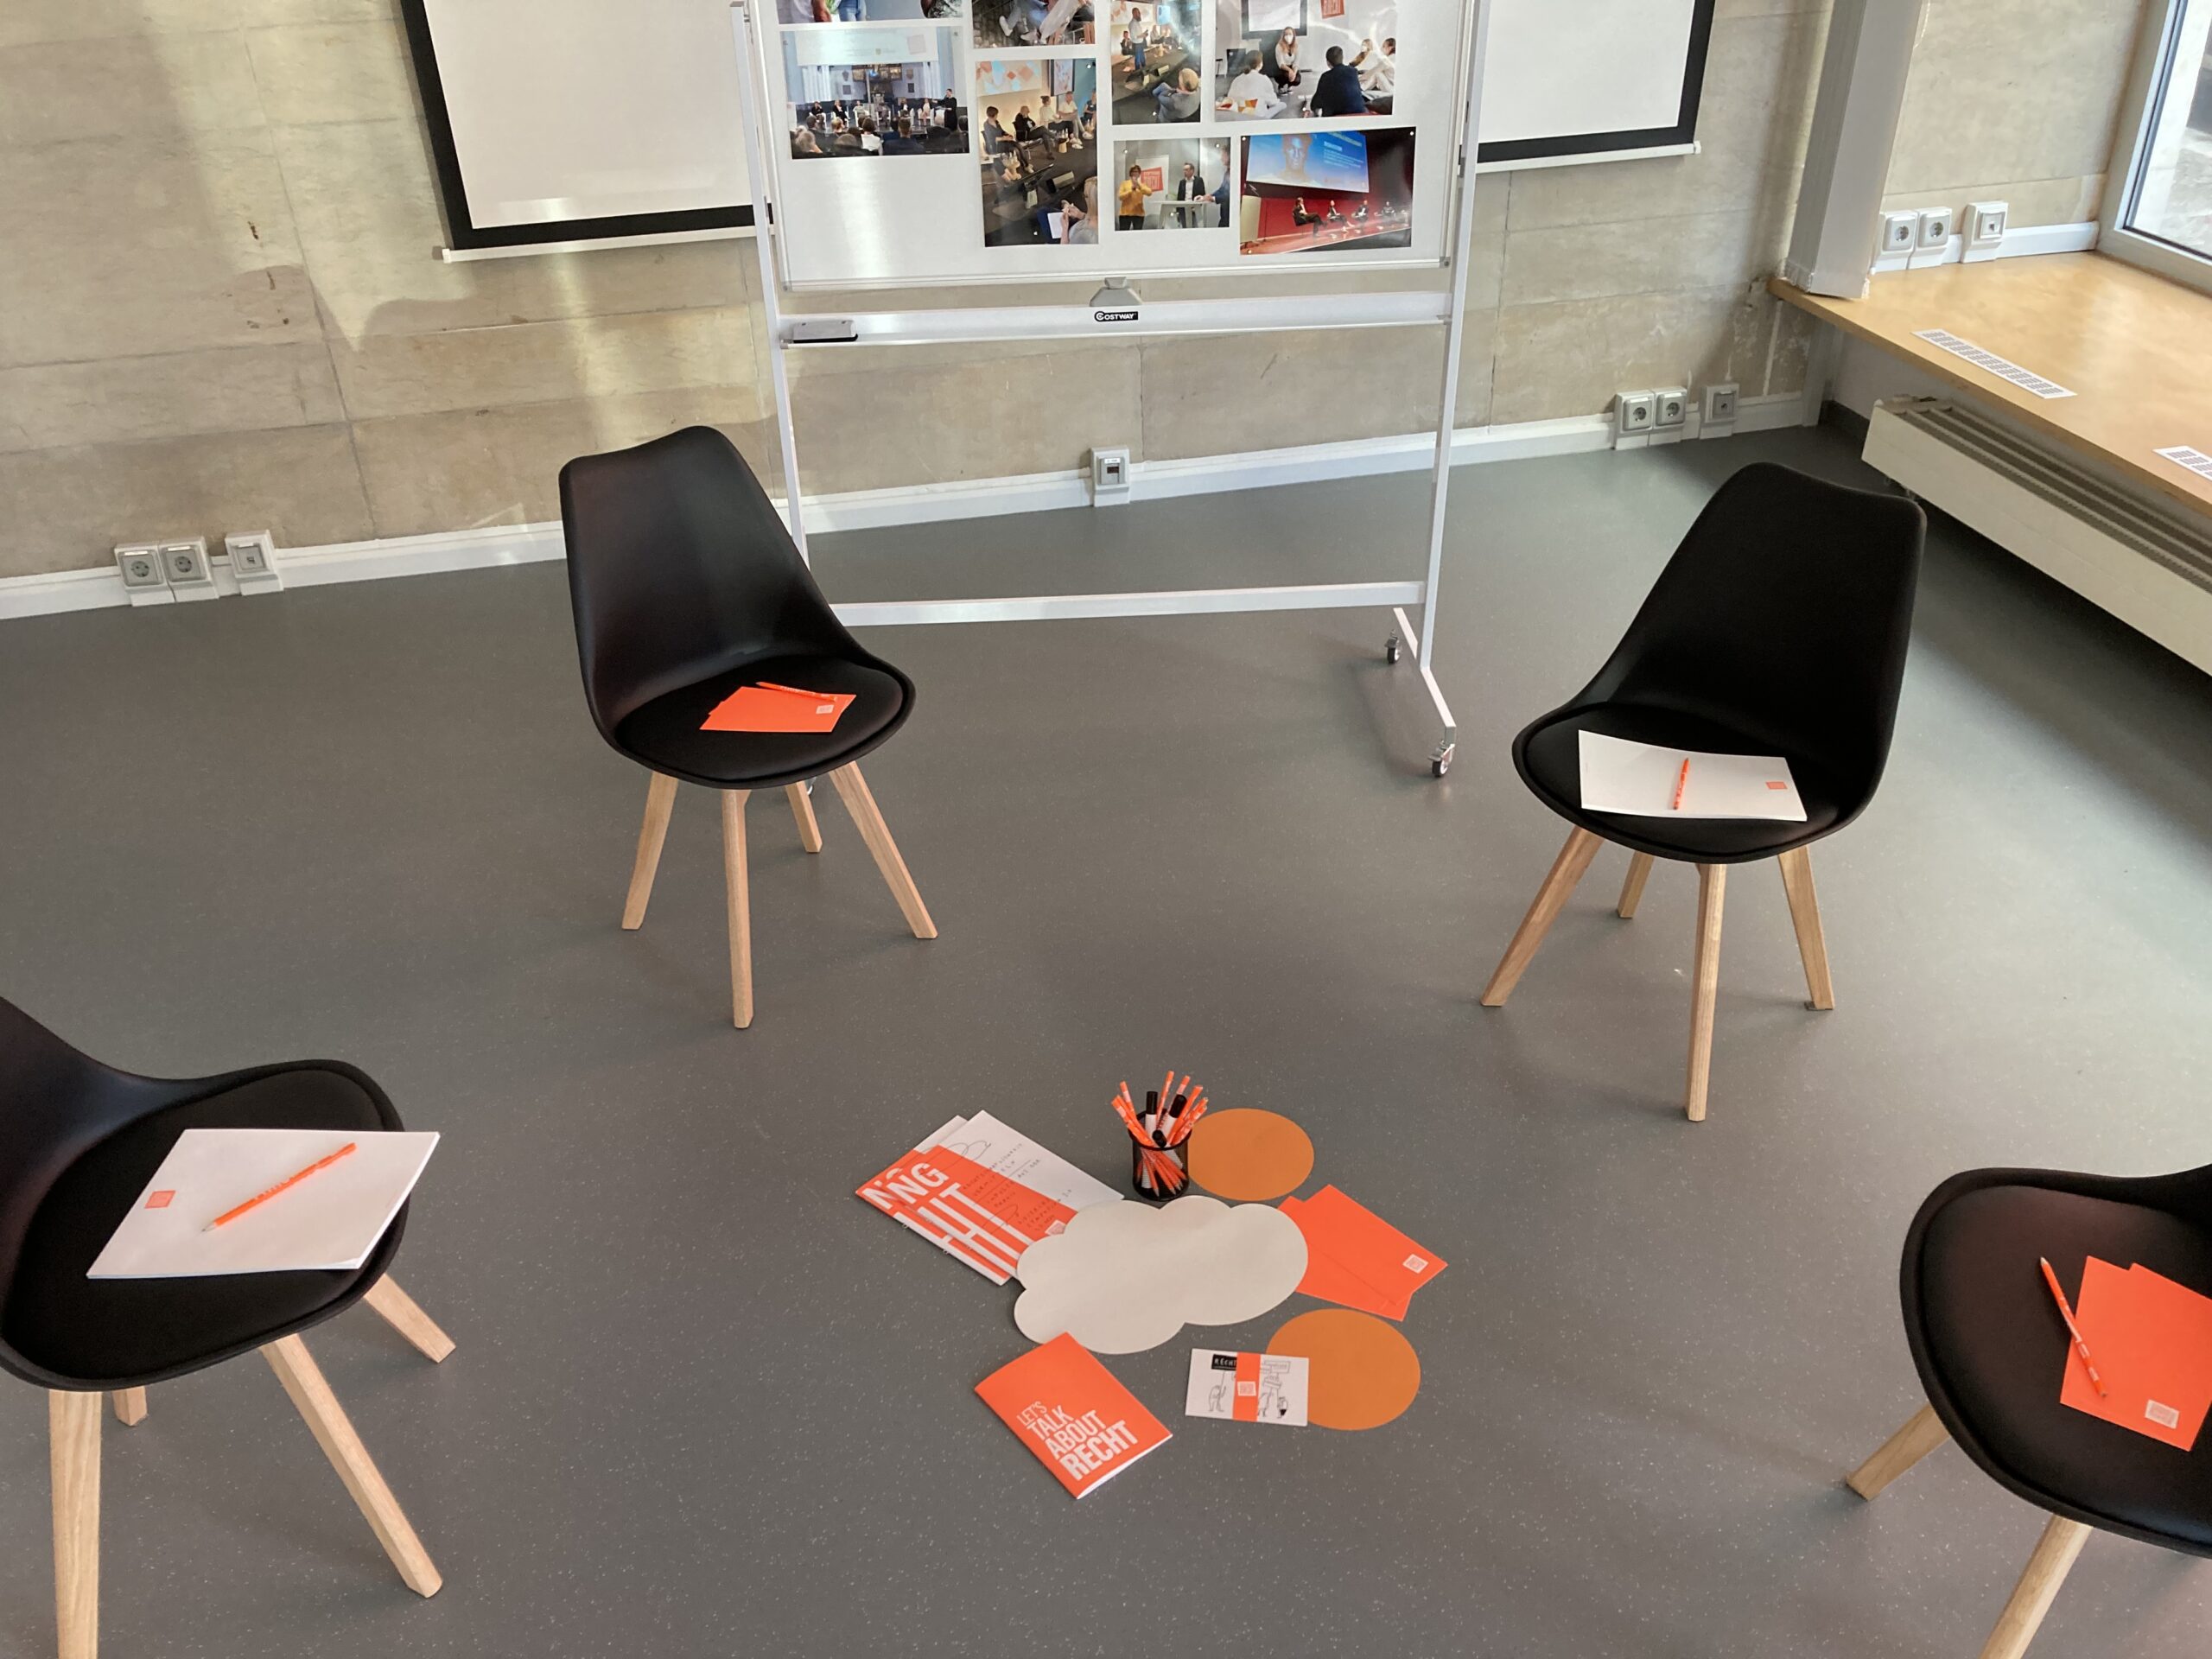 Workshopsituation: Stühle im Kreis, auf dem Boden liegt Arbeitsmaterial